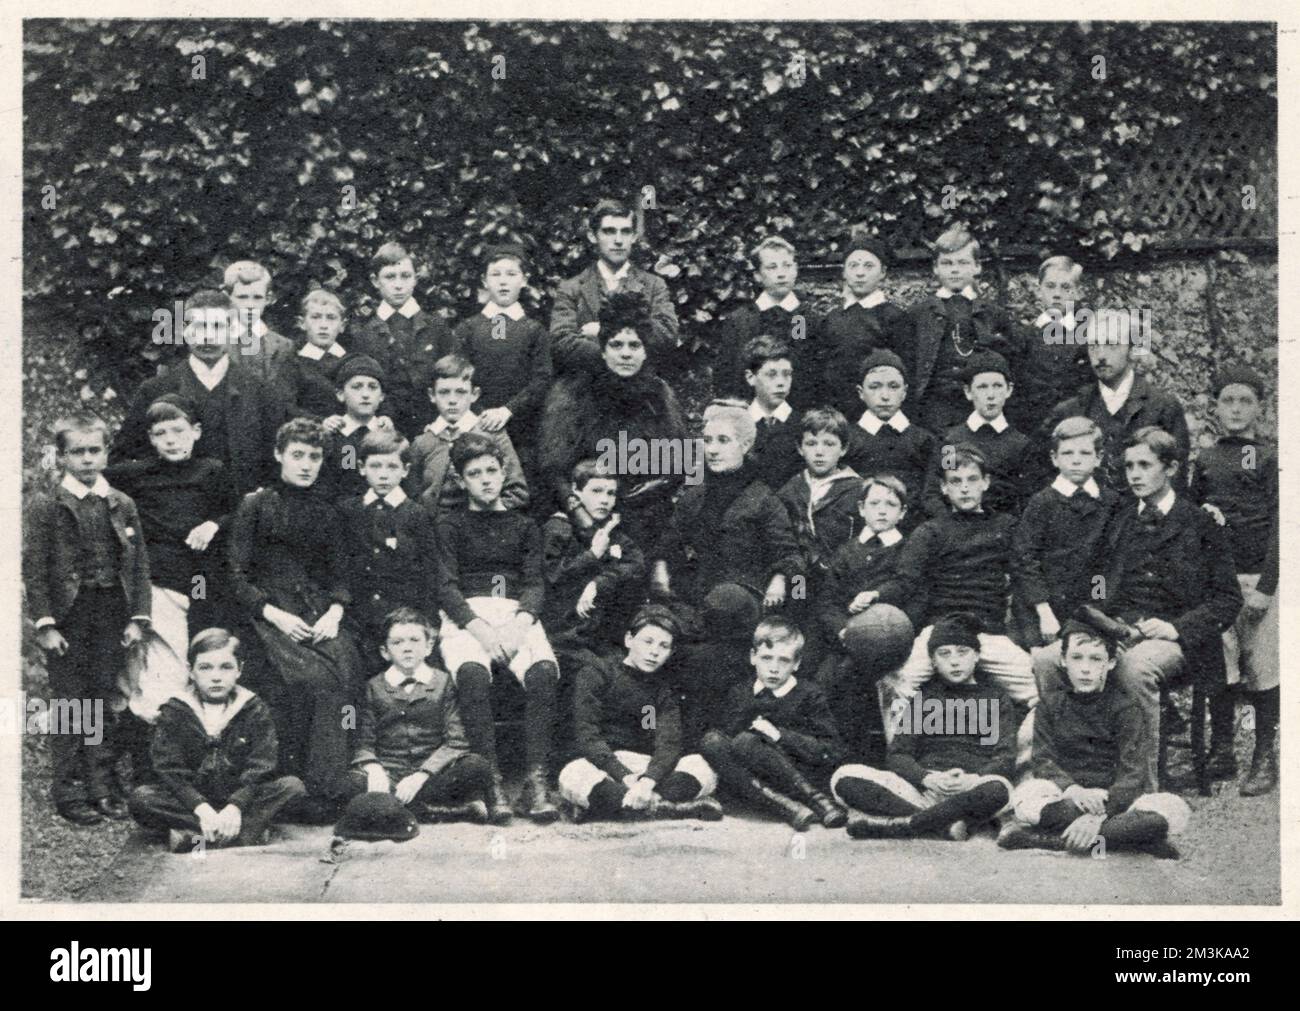 WINSTON CHURCHILL stellte sich im November 1886 als Schüler in der Schule der Miss Thompson in der Brunswick Road, Brighton, zweite Reihe, zweite von links vor. Datum: 1874 - 1965 Stockfoto